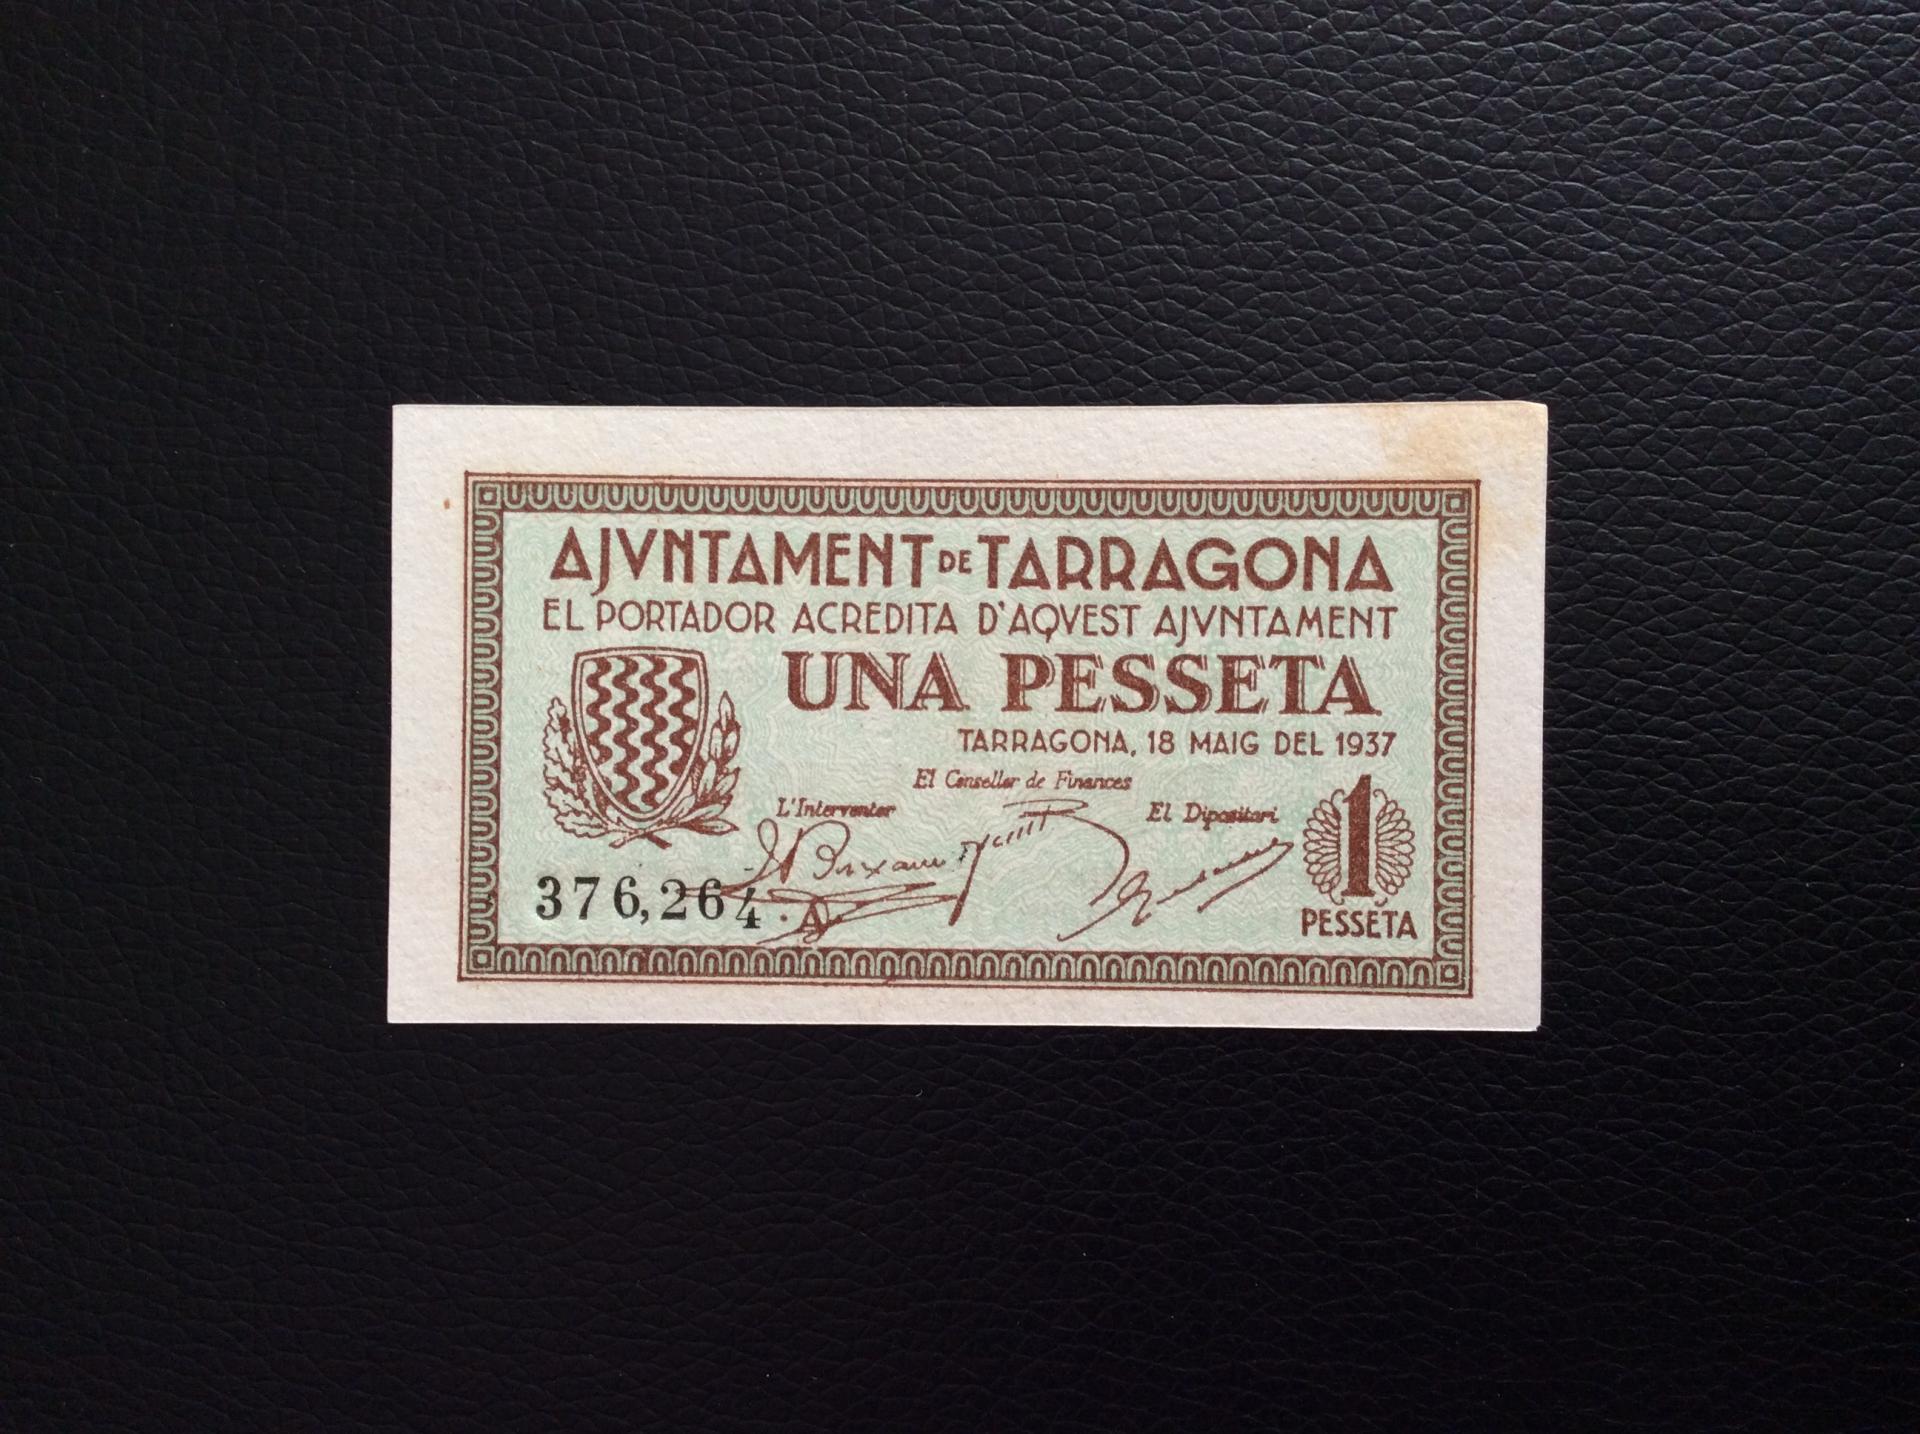 1 PESETA 1937 - AJUNTAMENT DE TARRAGONA - PLANCHA SIN CIRCULAR 